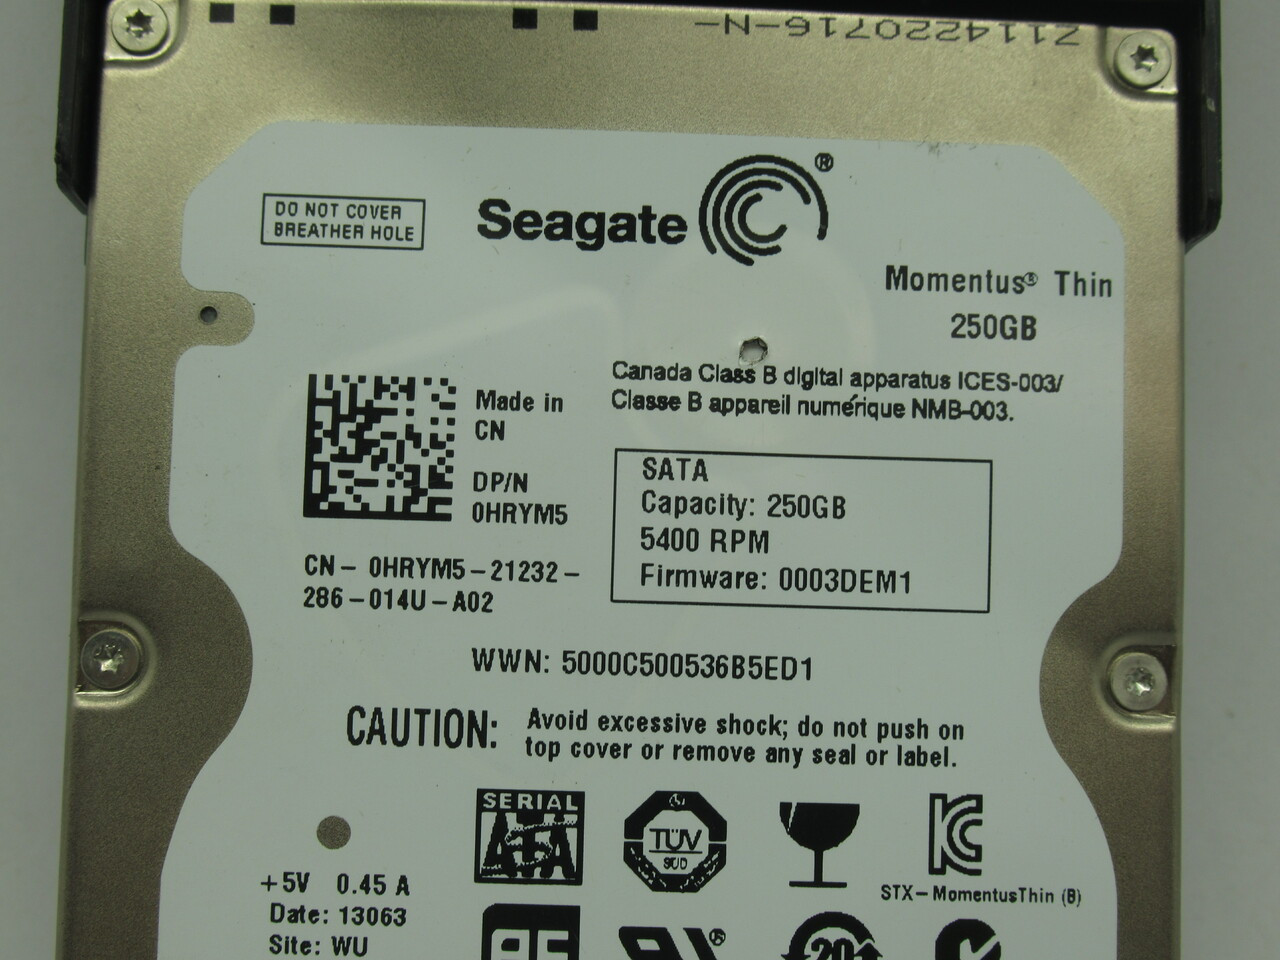 Seagate ST250LT003 Internal Hard Drive Momentus Thin 250GB FW: 0003DEM1 USED